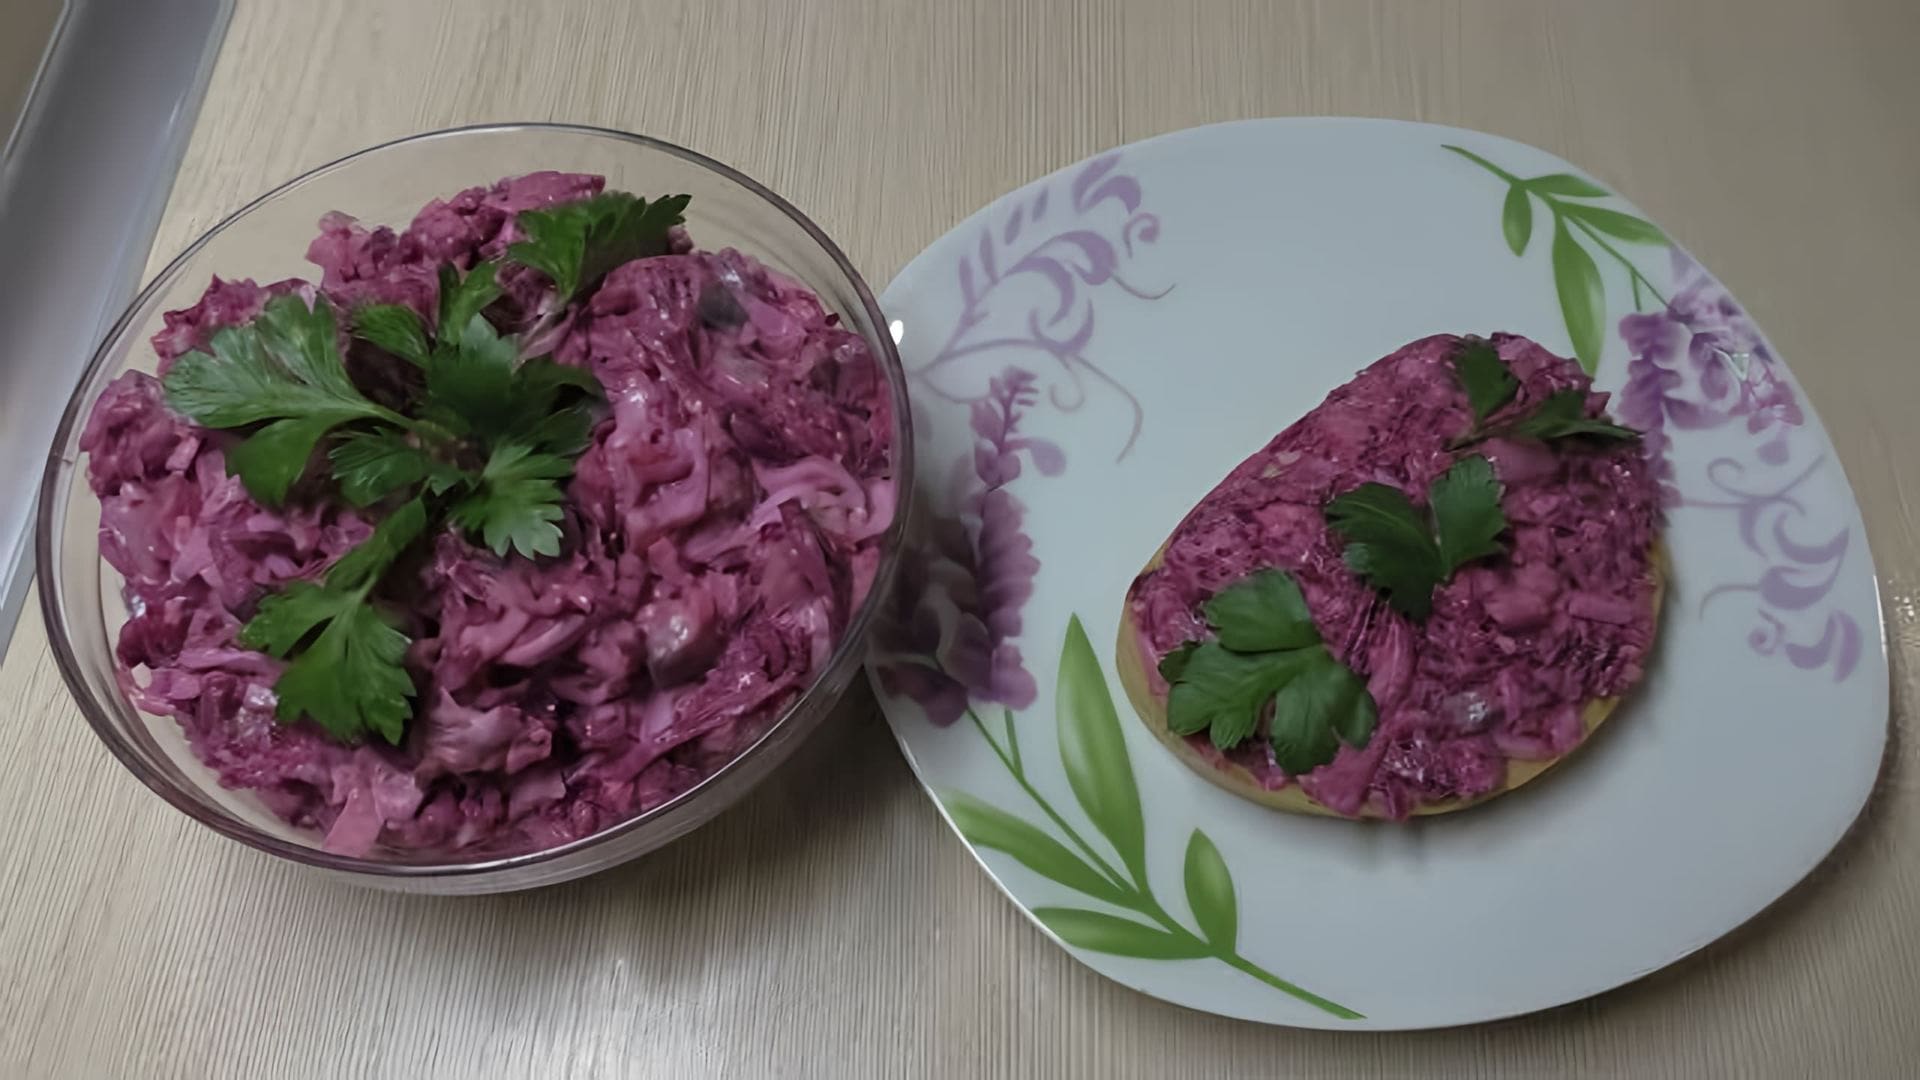 В этом видео демонстрируется рецепт закуски "Ленивая шуба" из селедки и свеклы